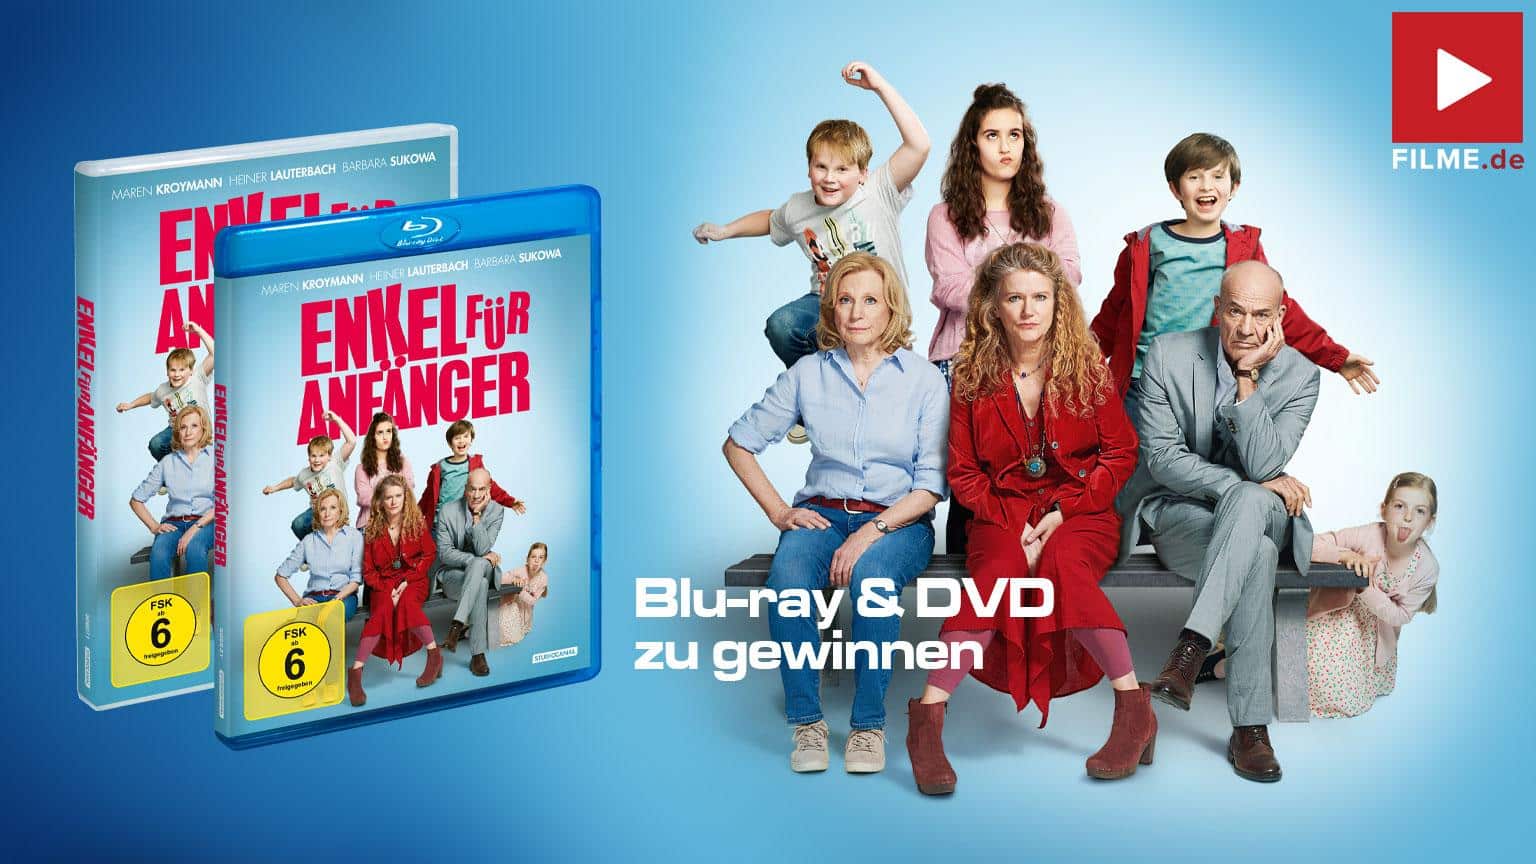 Gewinnspiel Enkel für Anfänger Film 2020 2019 Blu-ray DVD Cover shop kaufen Artikelbild